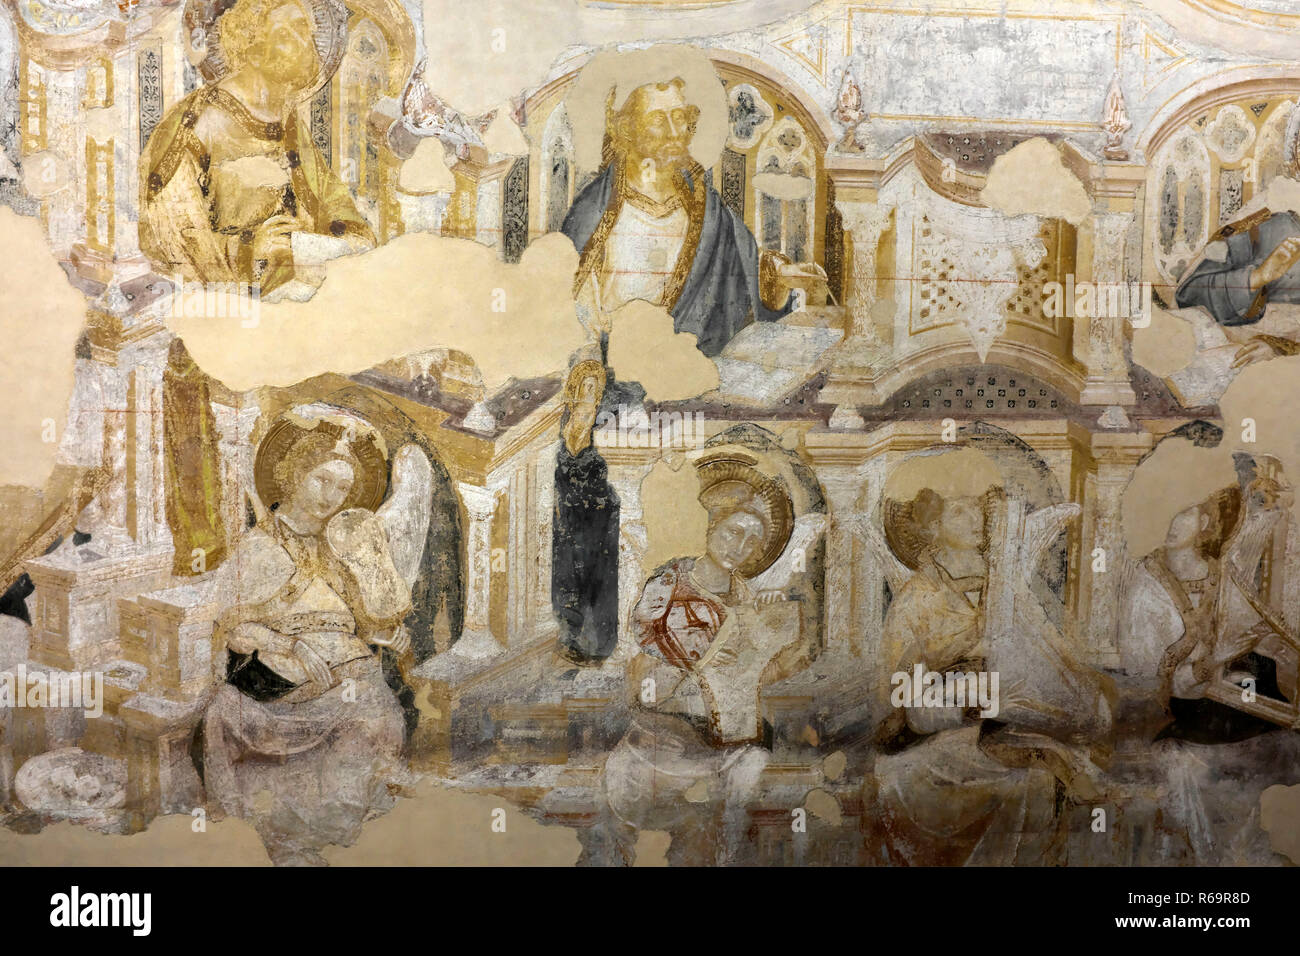 Fresco de la Coronación de la Virgen, que se llama Paraíso, el detalle, el Palacio Ducal, el Palazzo Ducale, Venecia, Véneto, Italia Foto de stock